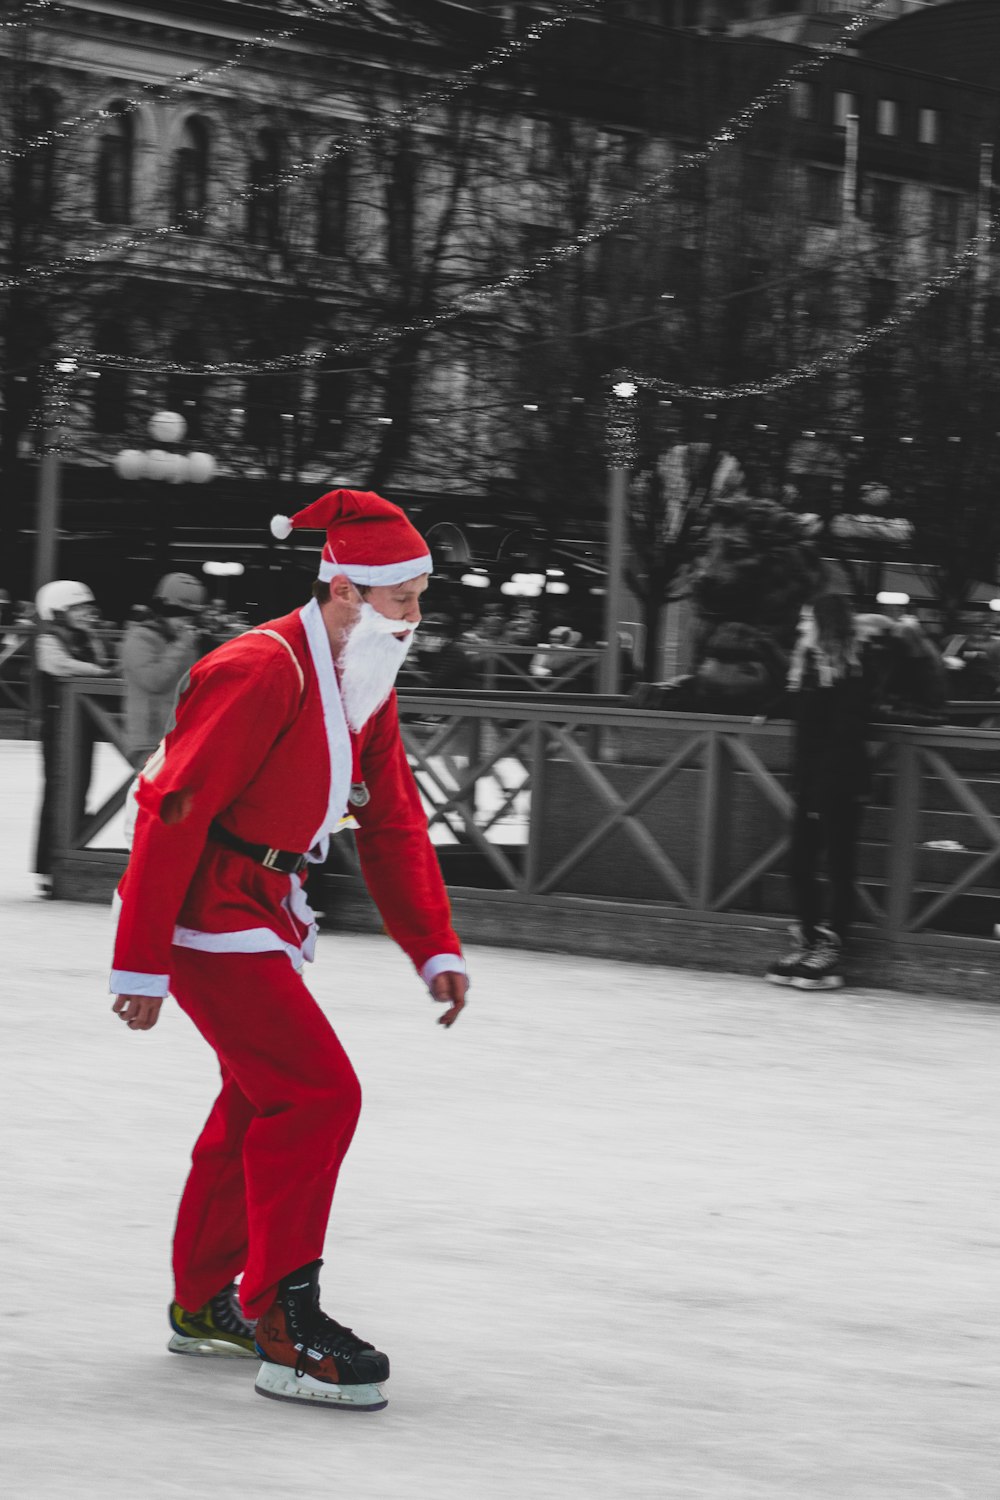 Mann trägt Weihnachtsmann-Anzug, während er Schneehautstiefel benutzt